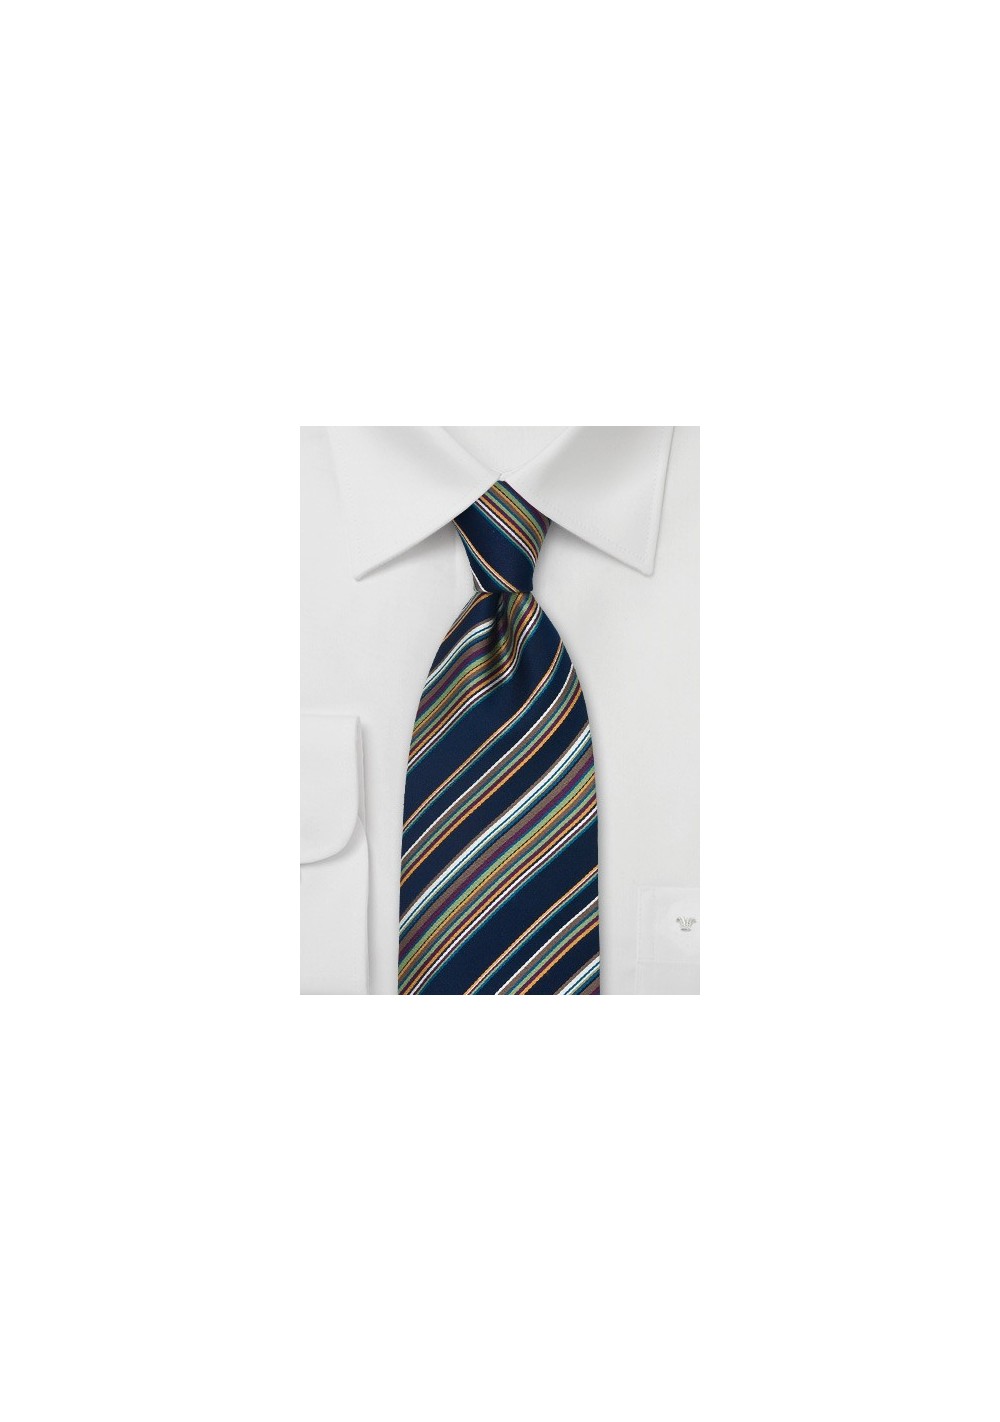 Fine Striped Necktie by Cavallieri